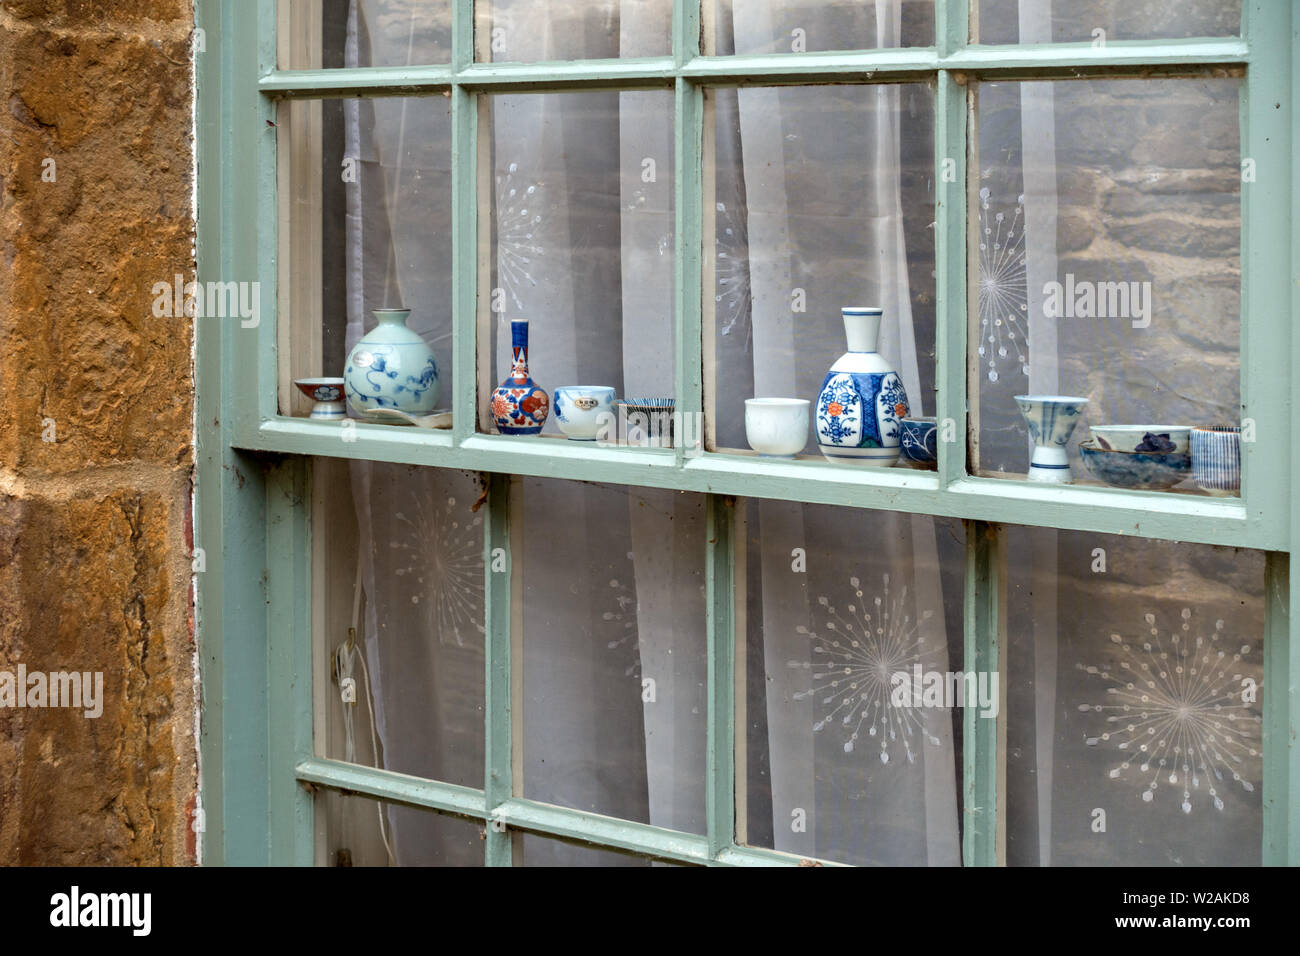 Atractiva pantalla en miniatura de porcelana antigua platos ornamentales, cuencos, jarrones y macetas en una fila a lo largo de sus ventanales de guillotina, Rutland, Reino Unido Foto de stock